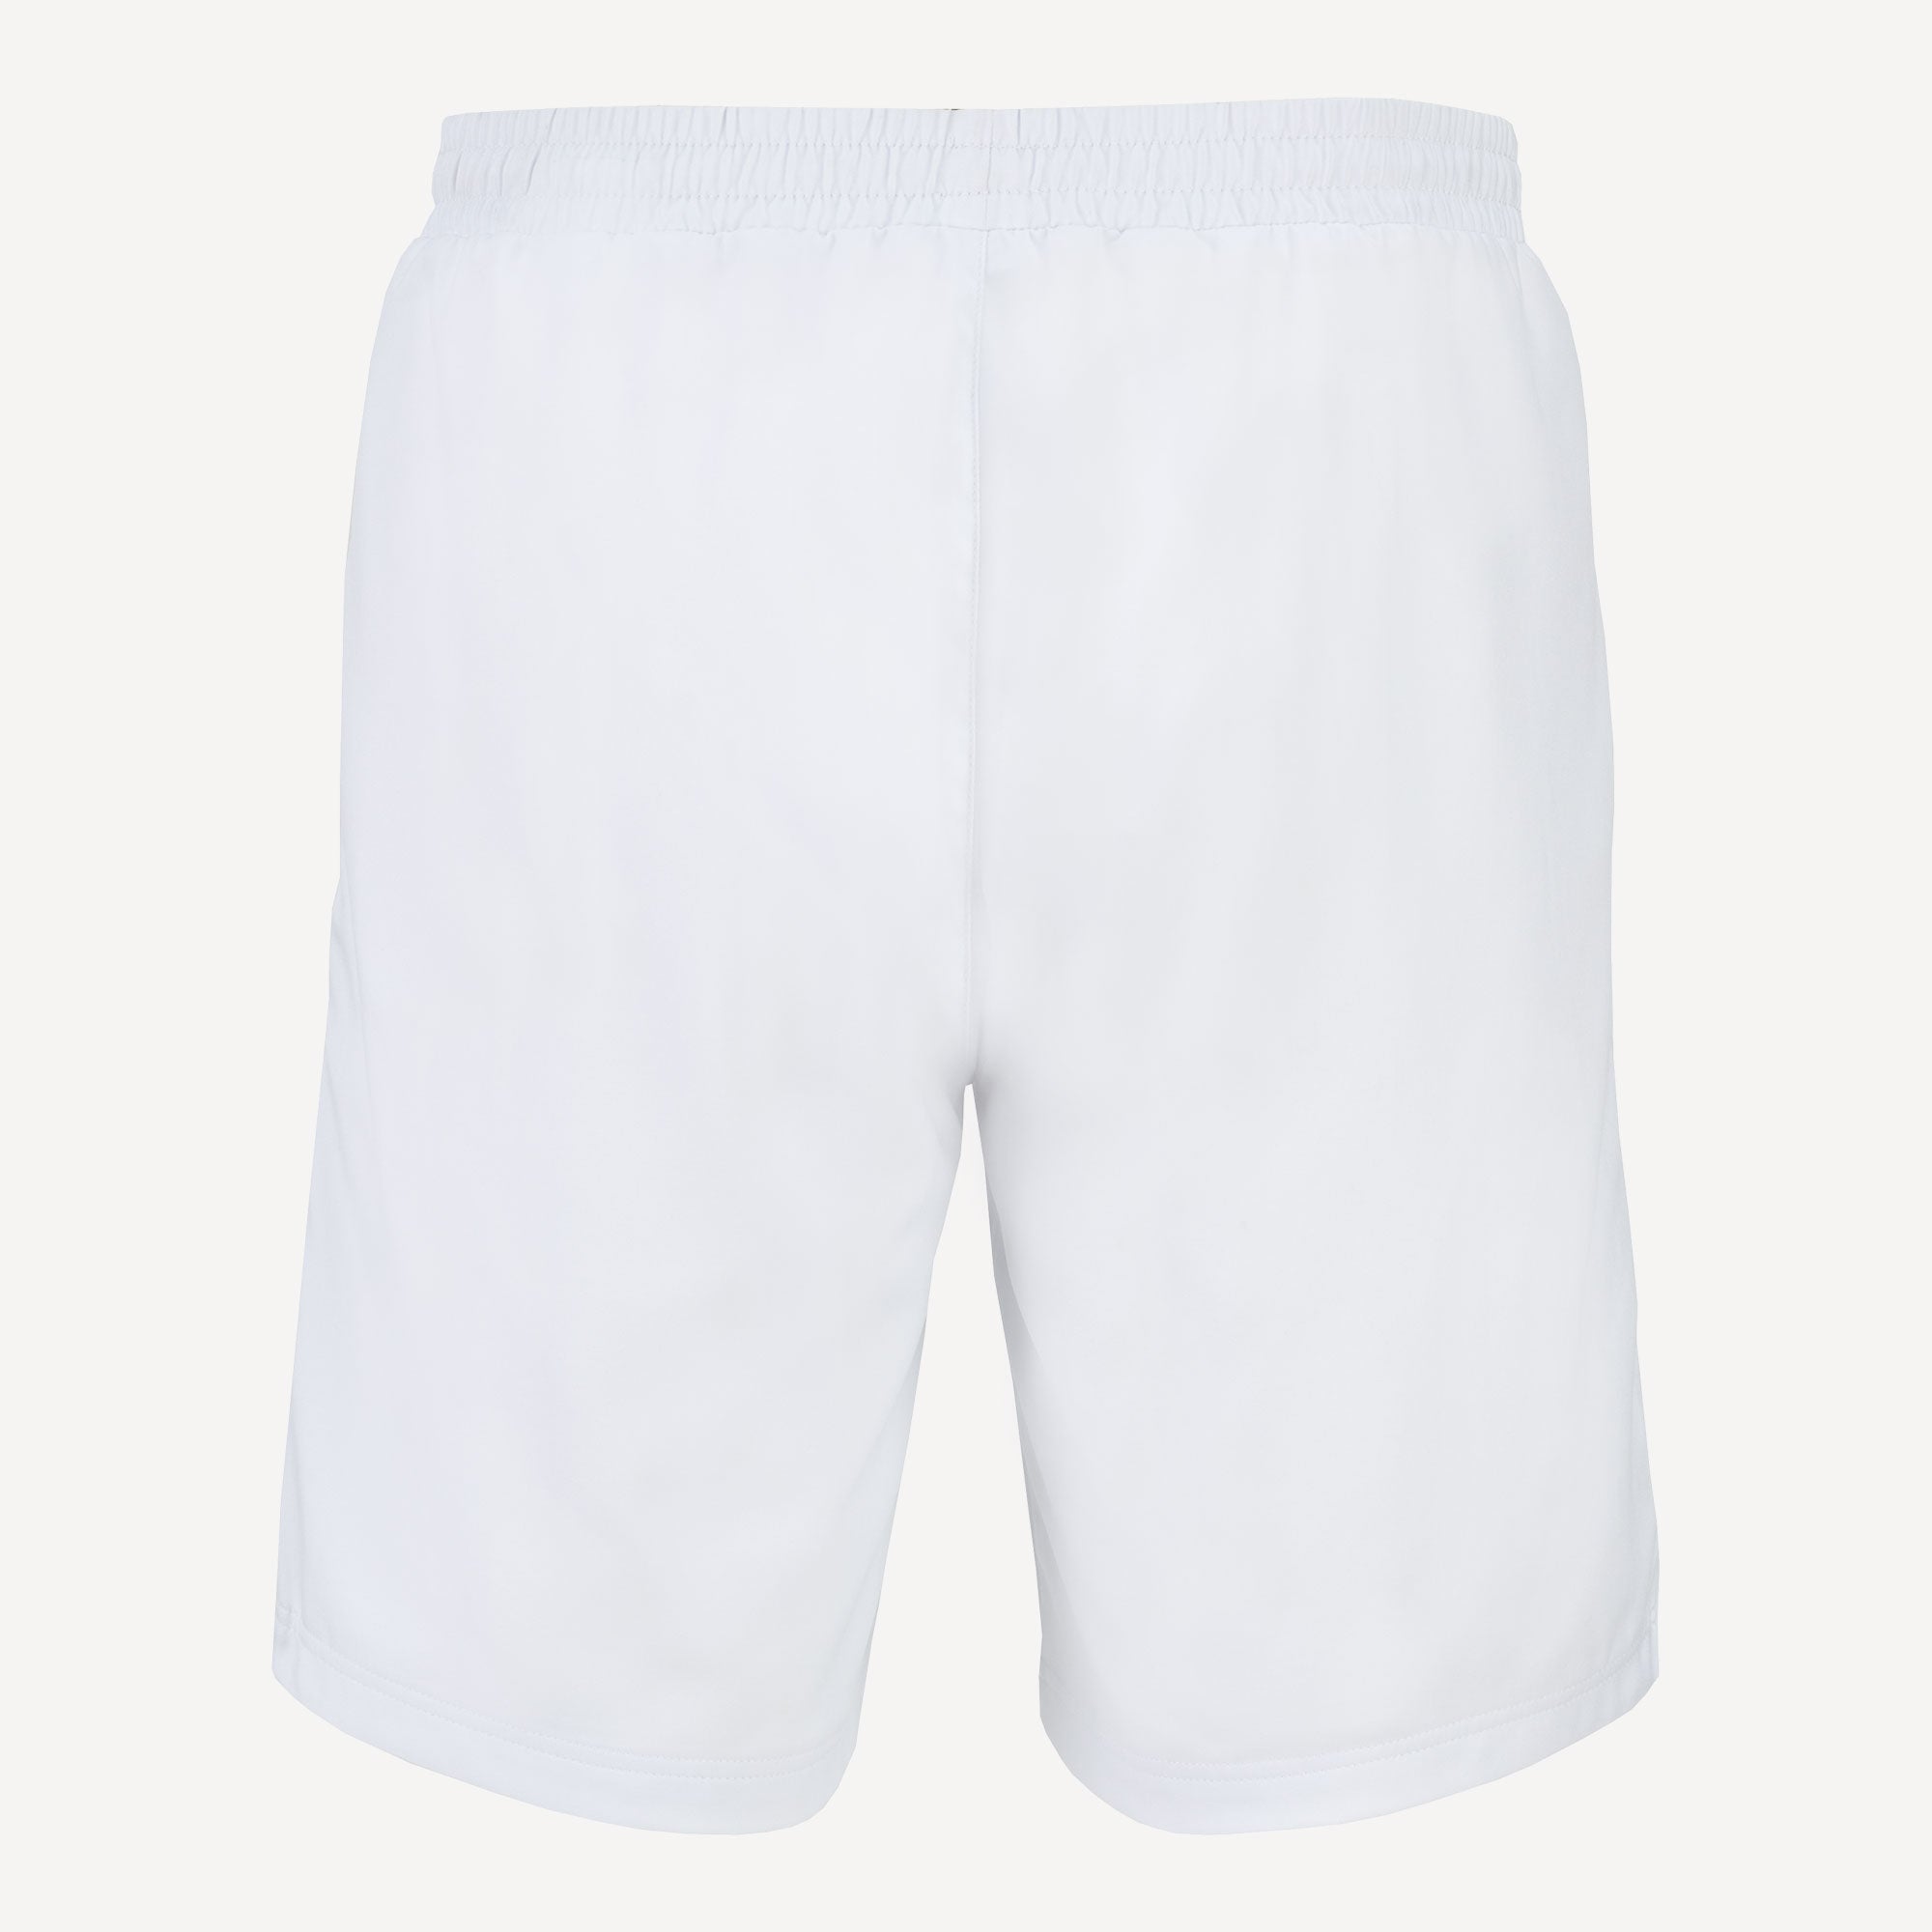 Fila Leon Men's Tennis Shorts White (2)